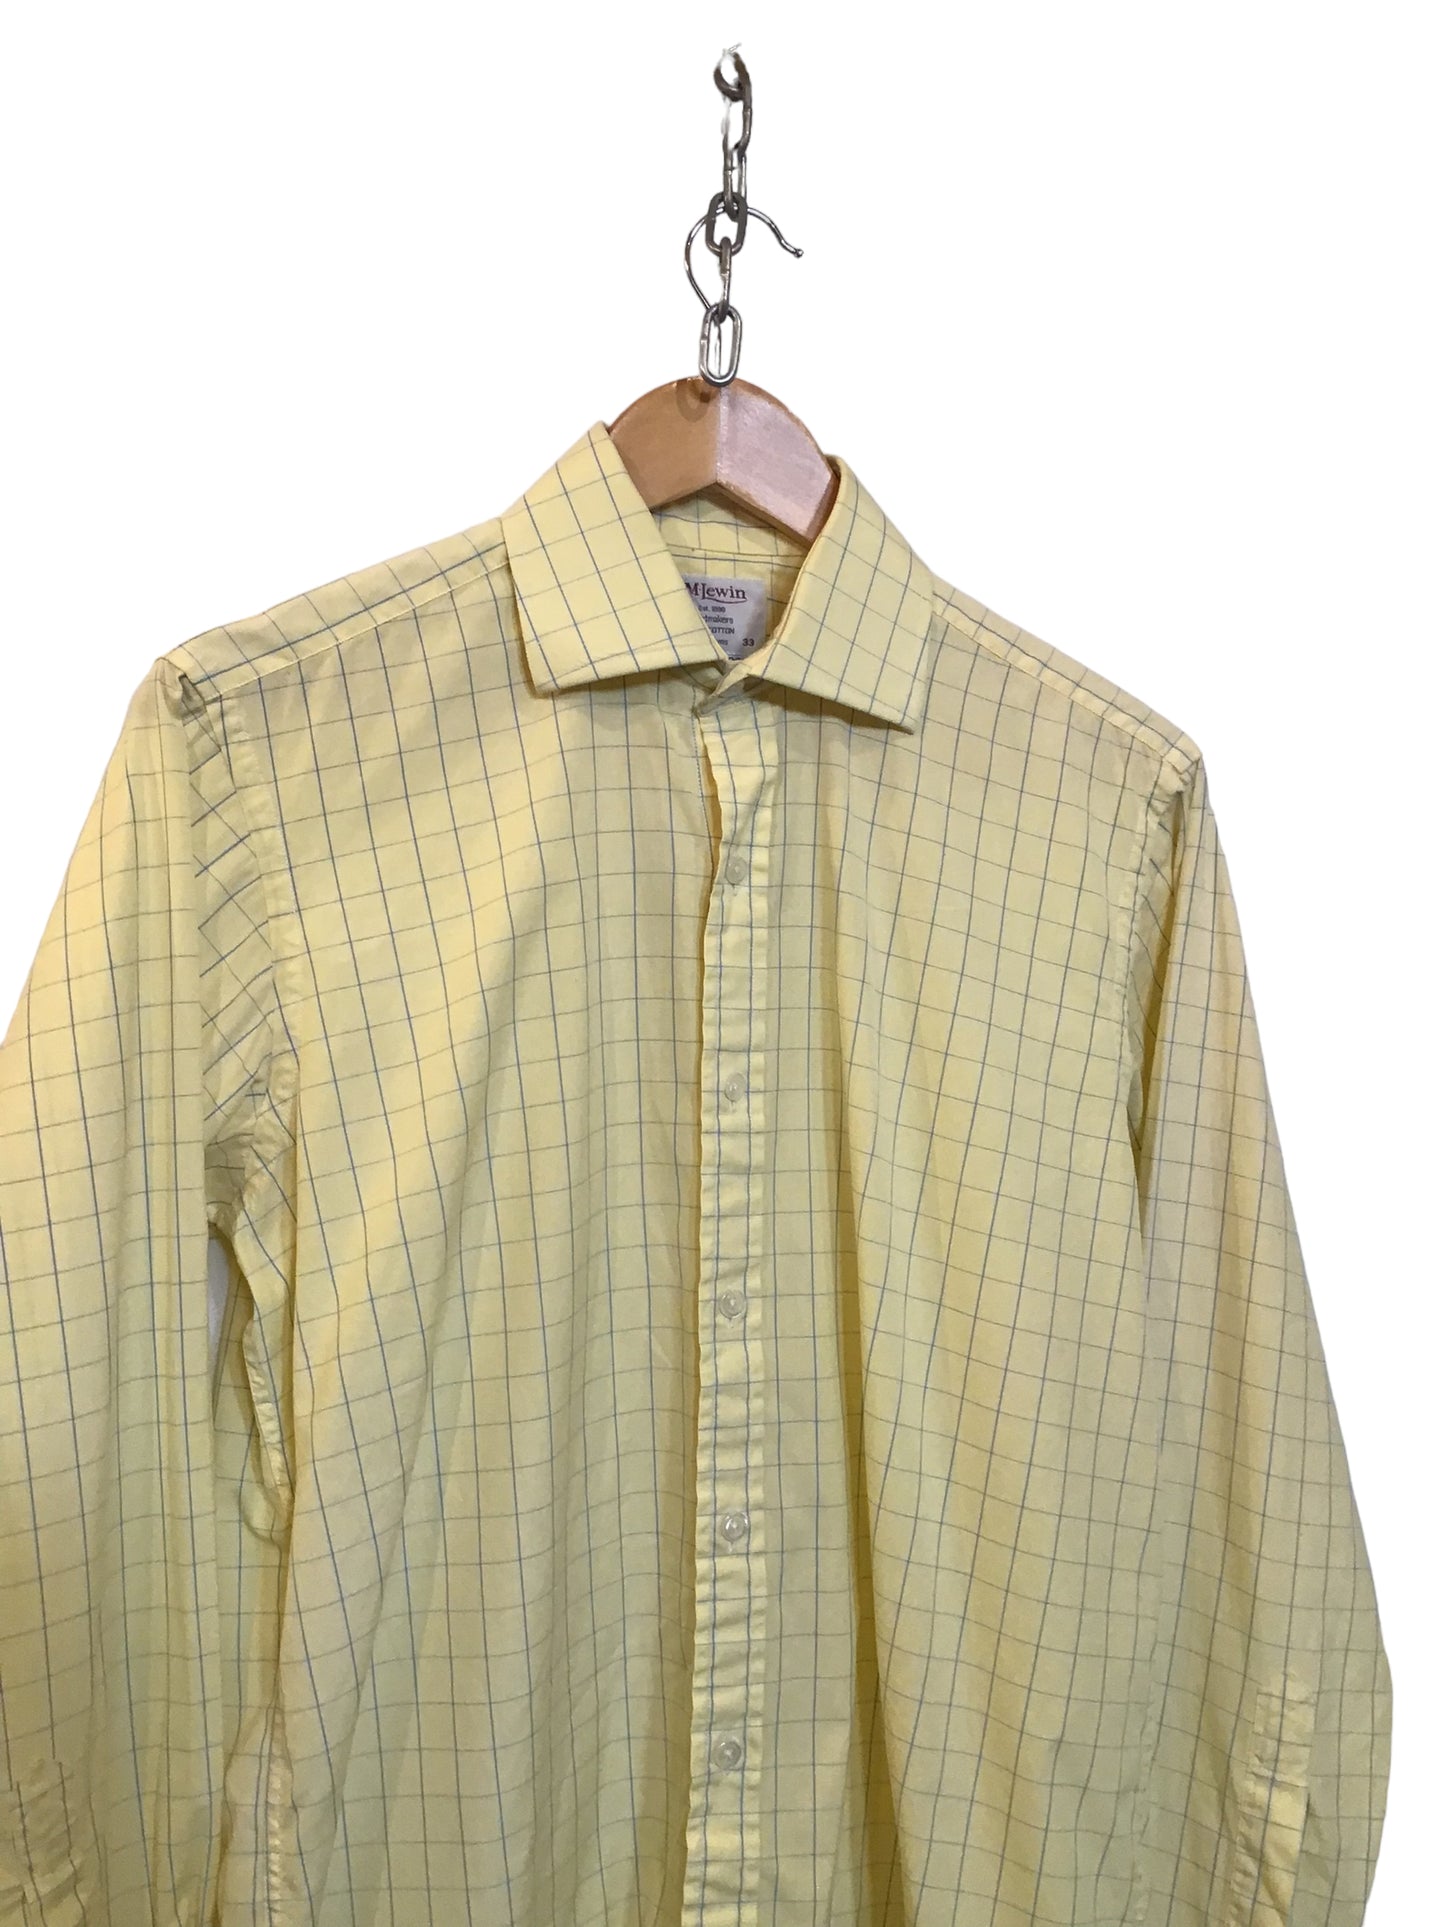 T.M.Jewin Shirt (Size L)